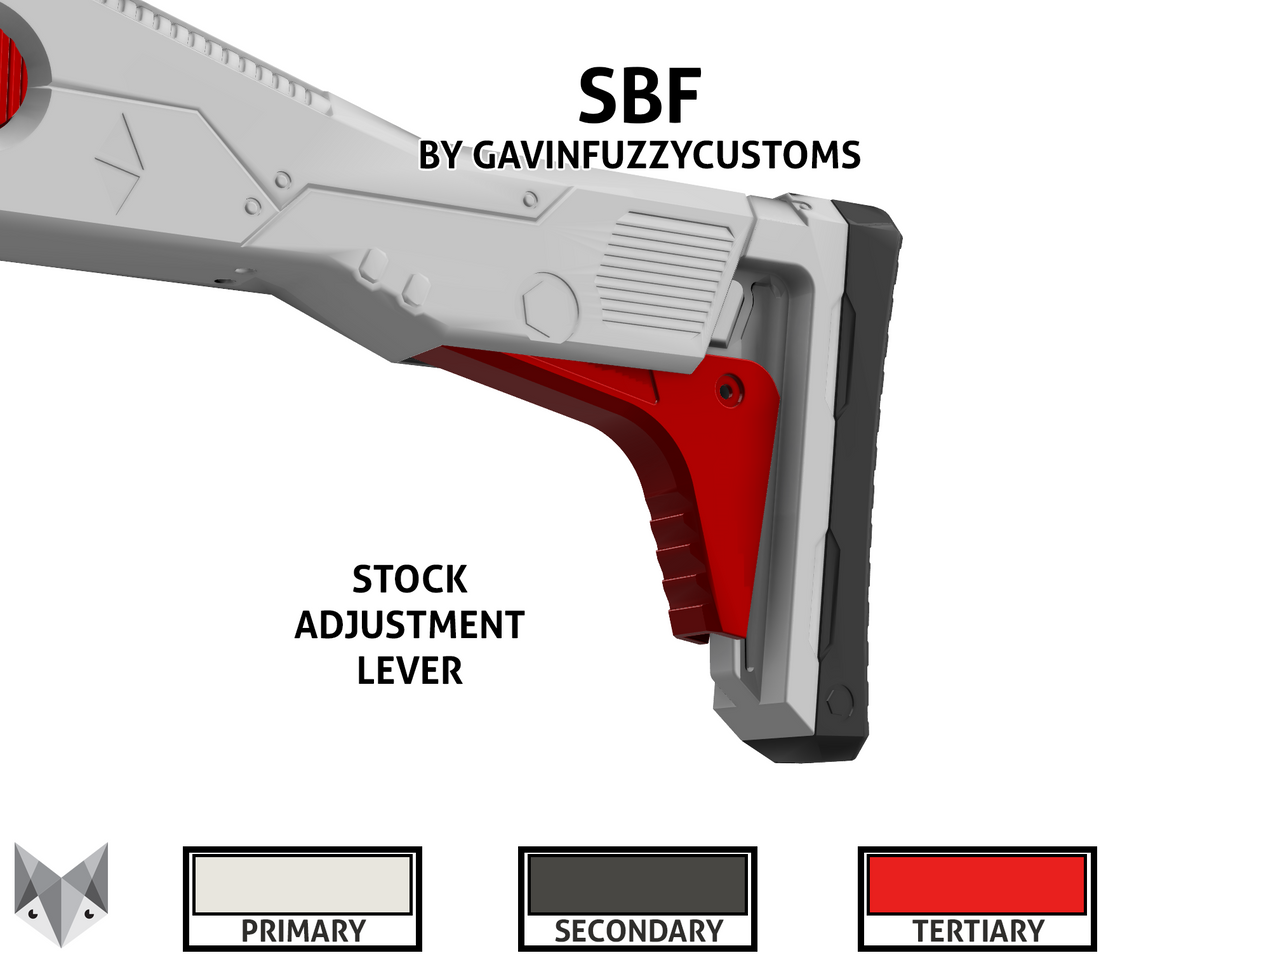 SBF by GavinFuzzyCustoms